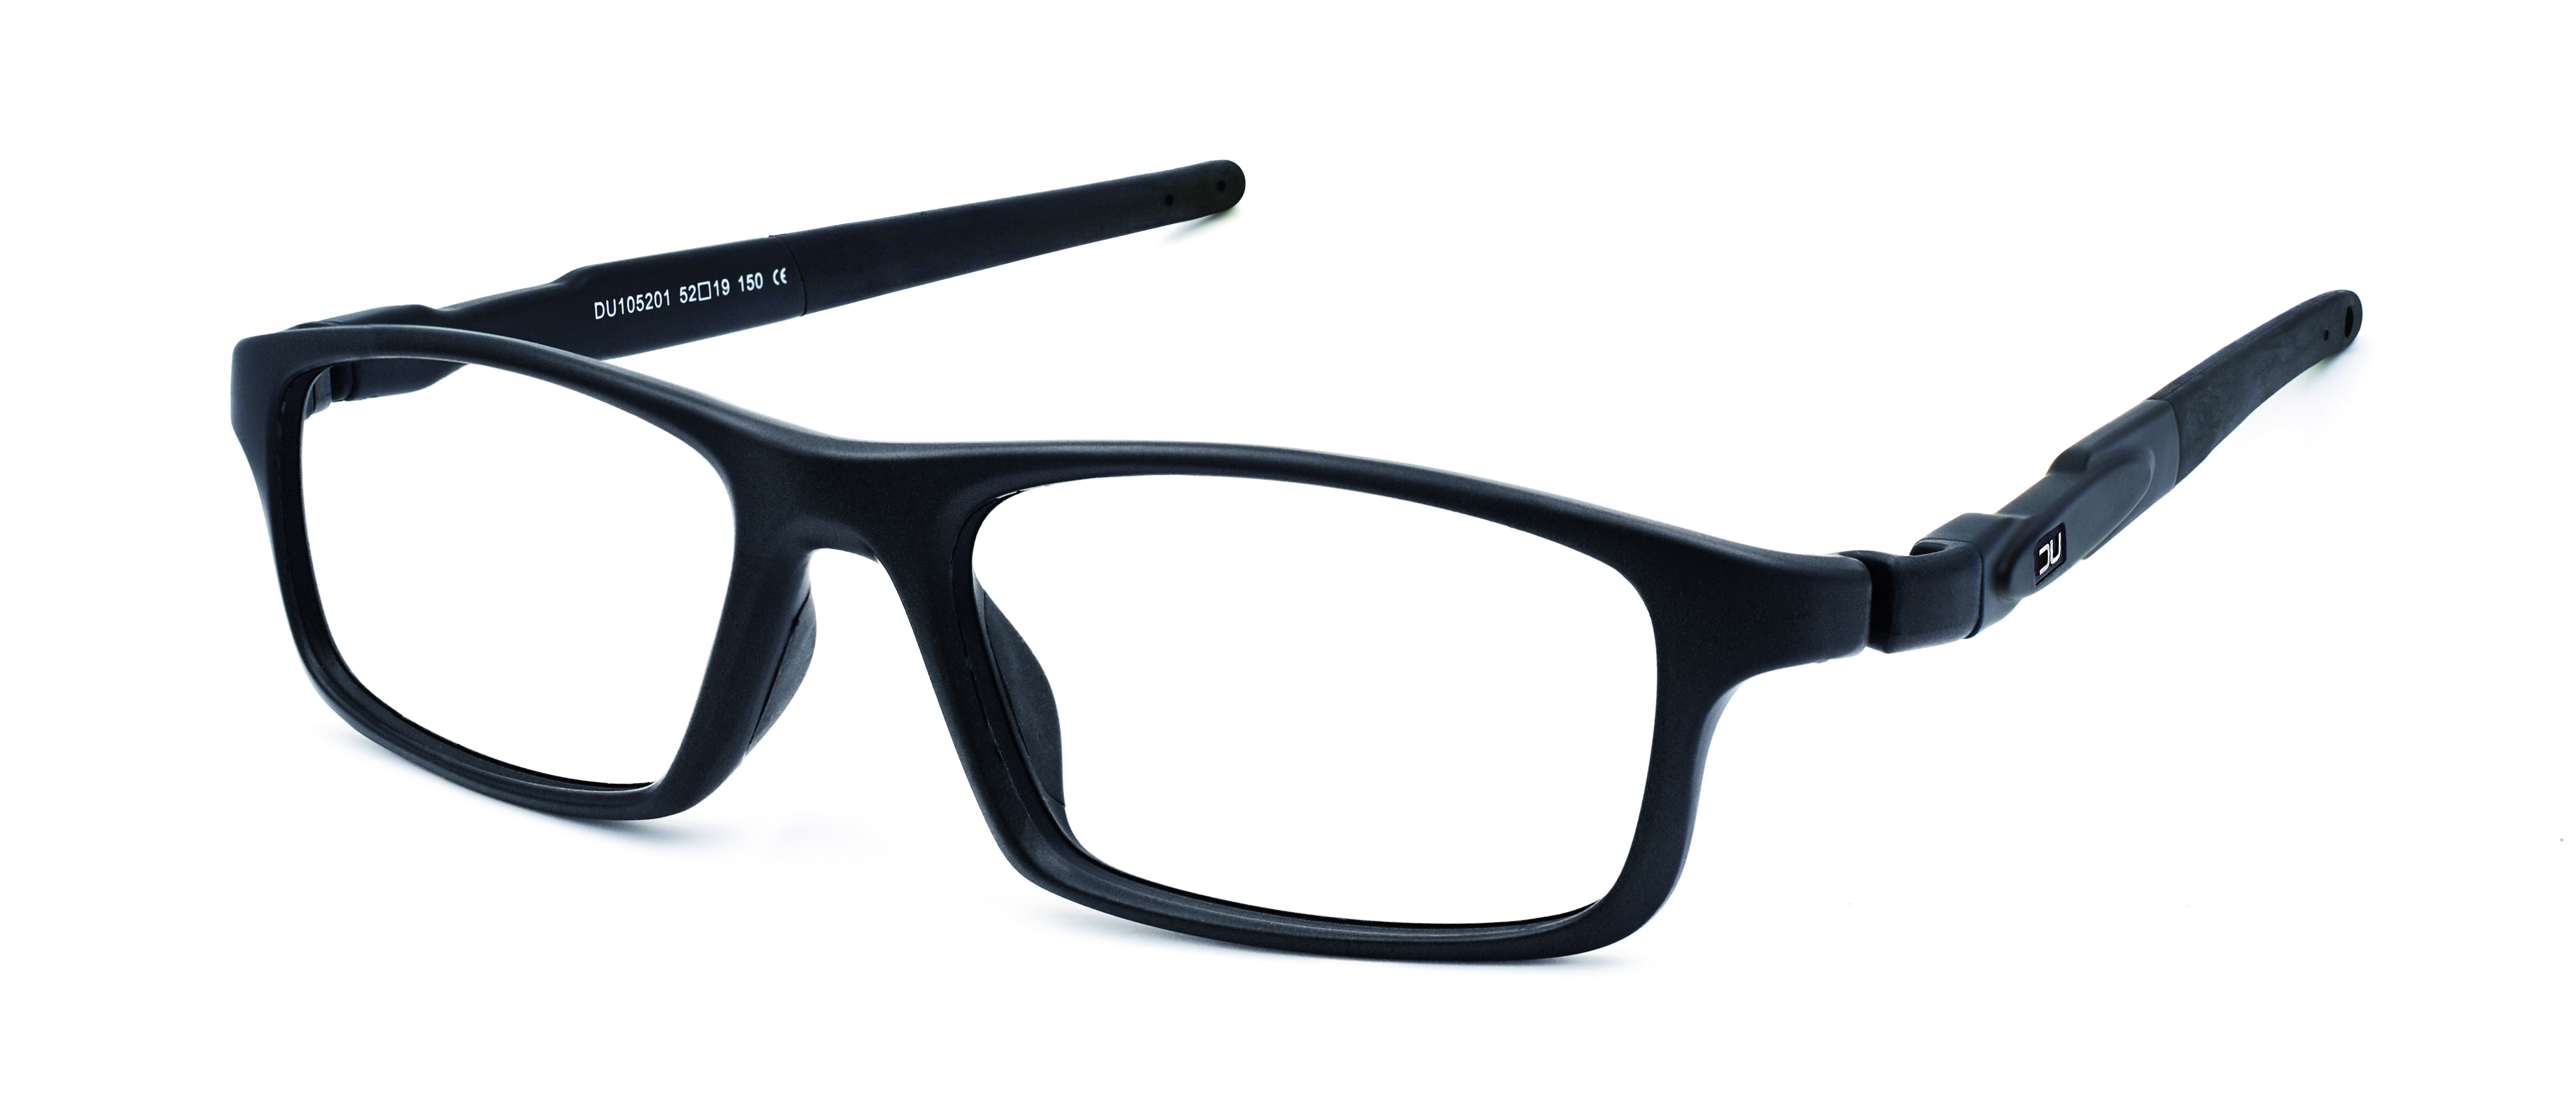 Se pueden devolver unas gafas graduadas general optica